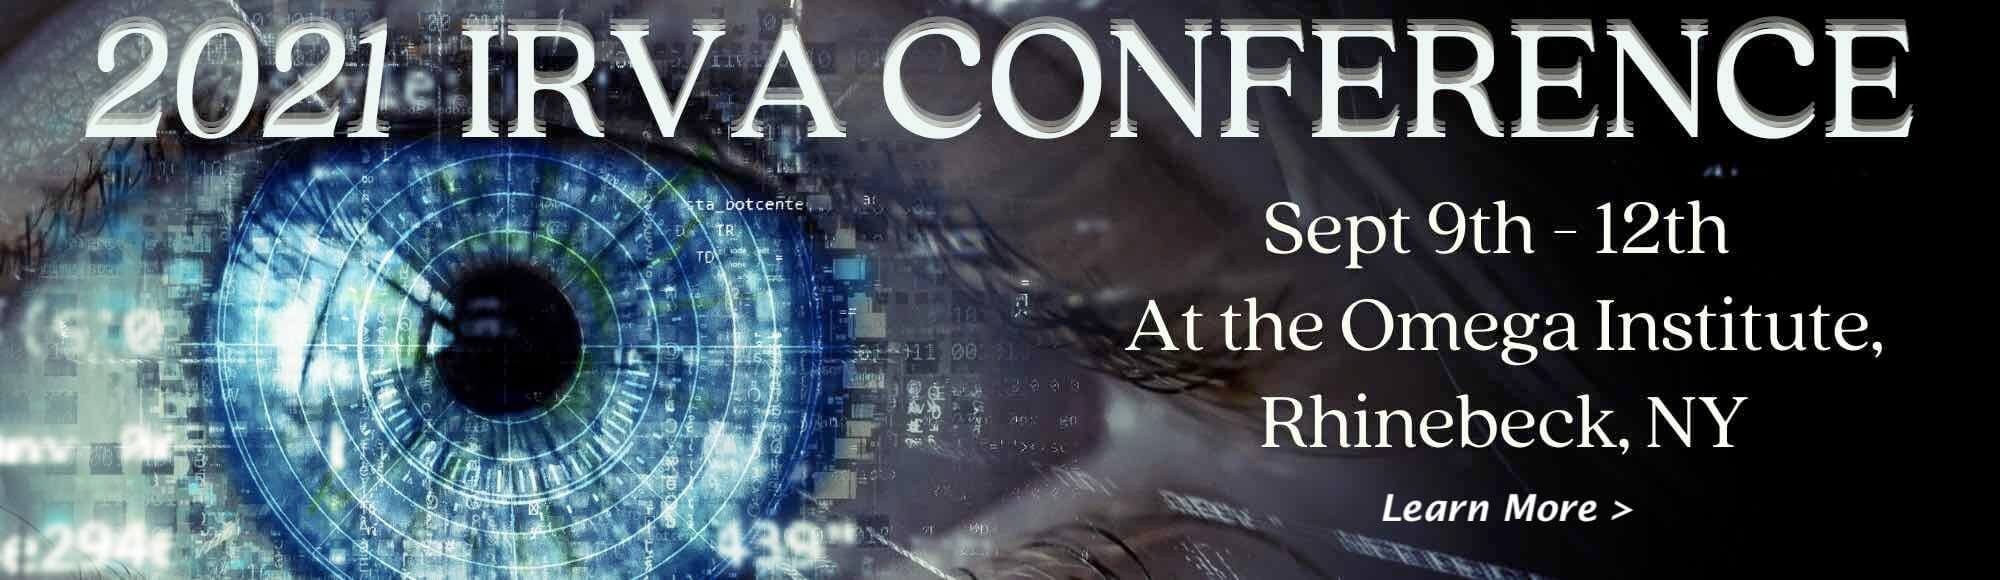 IRVA Conference Ad